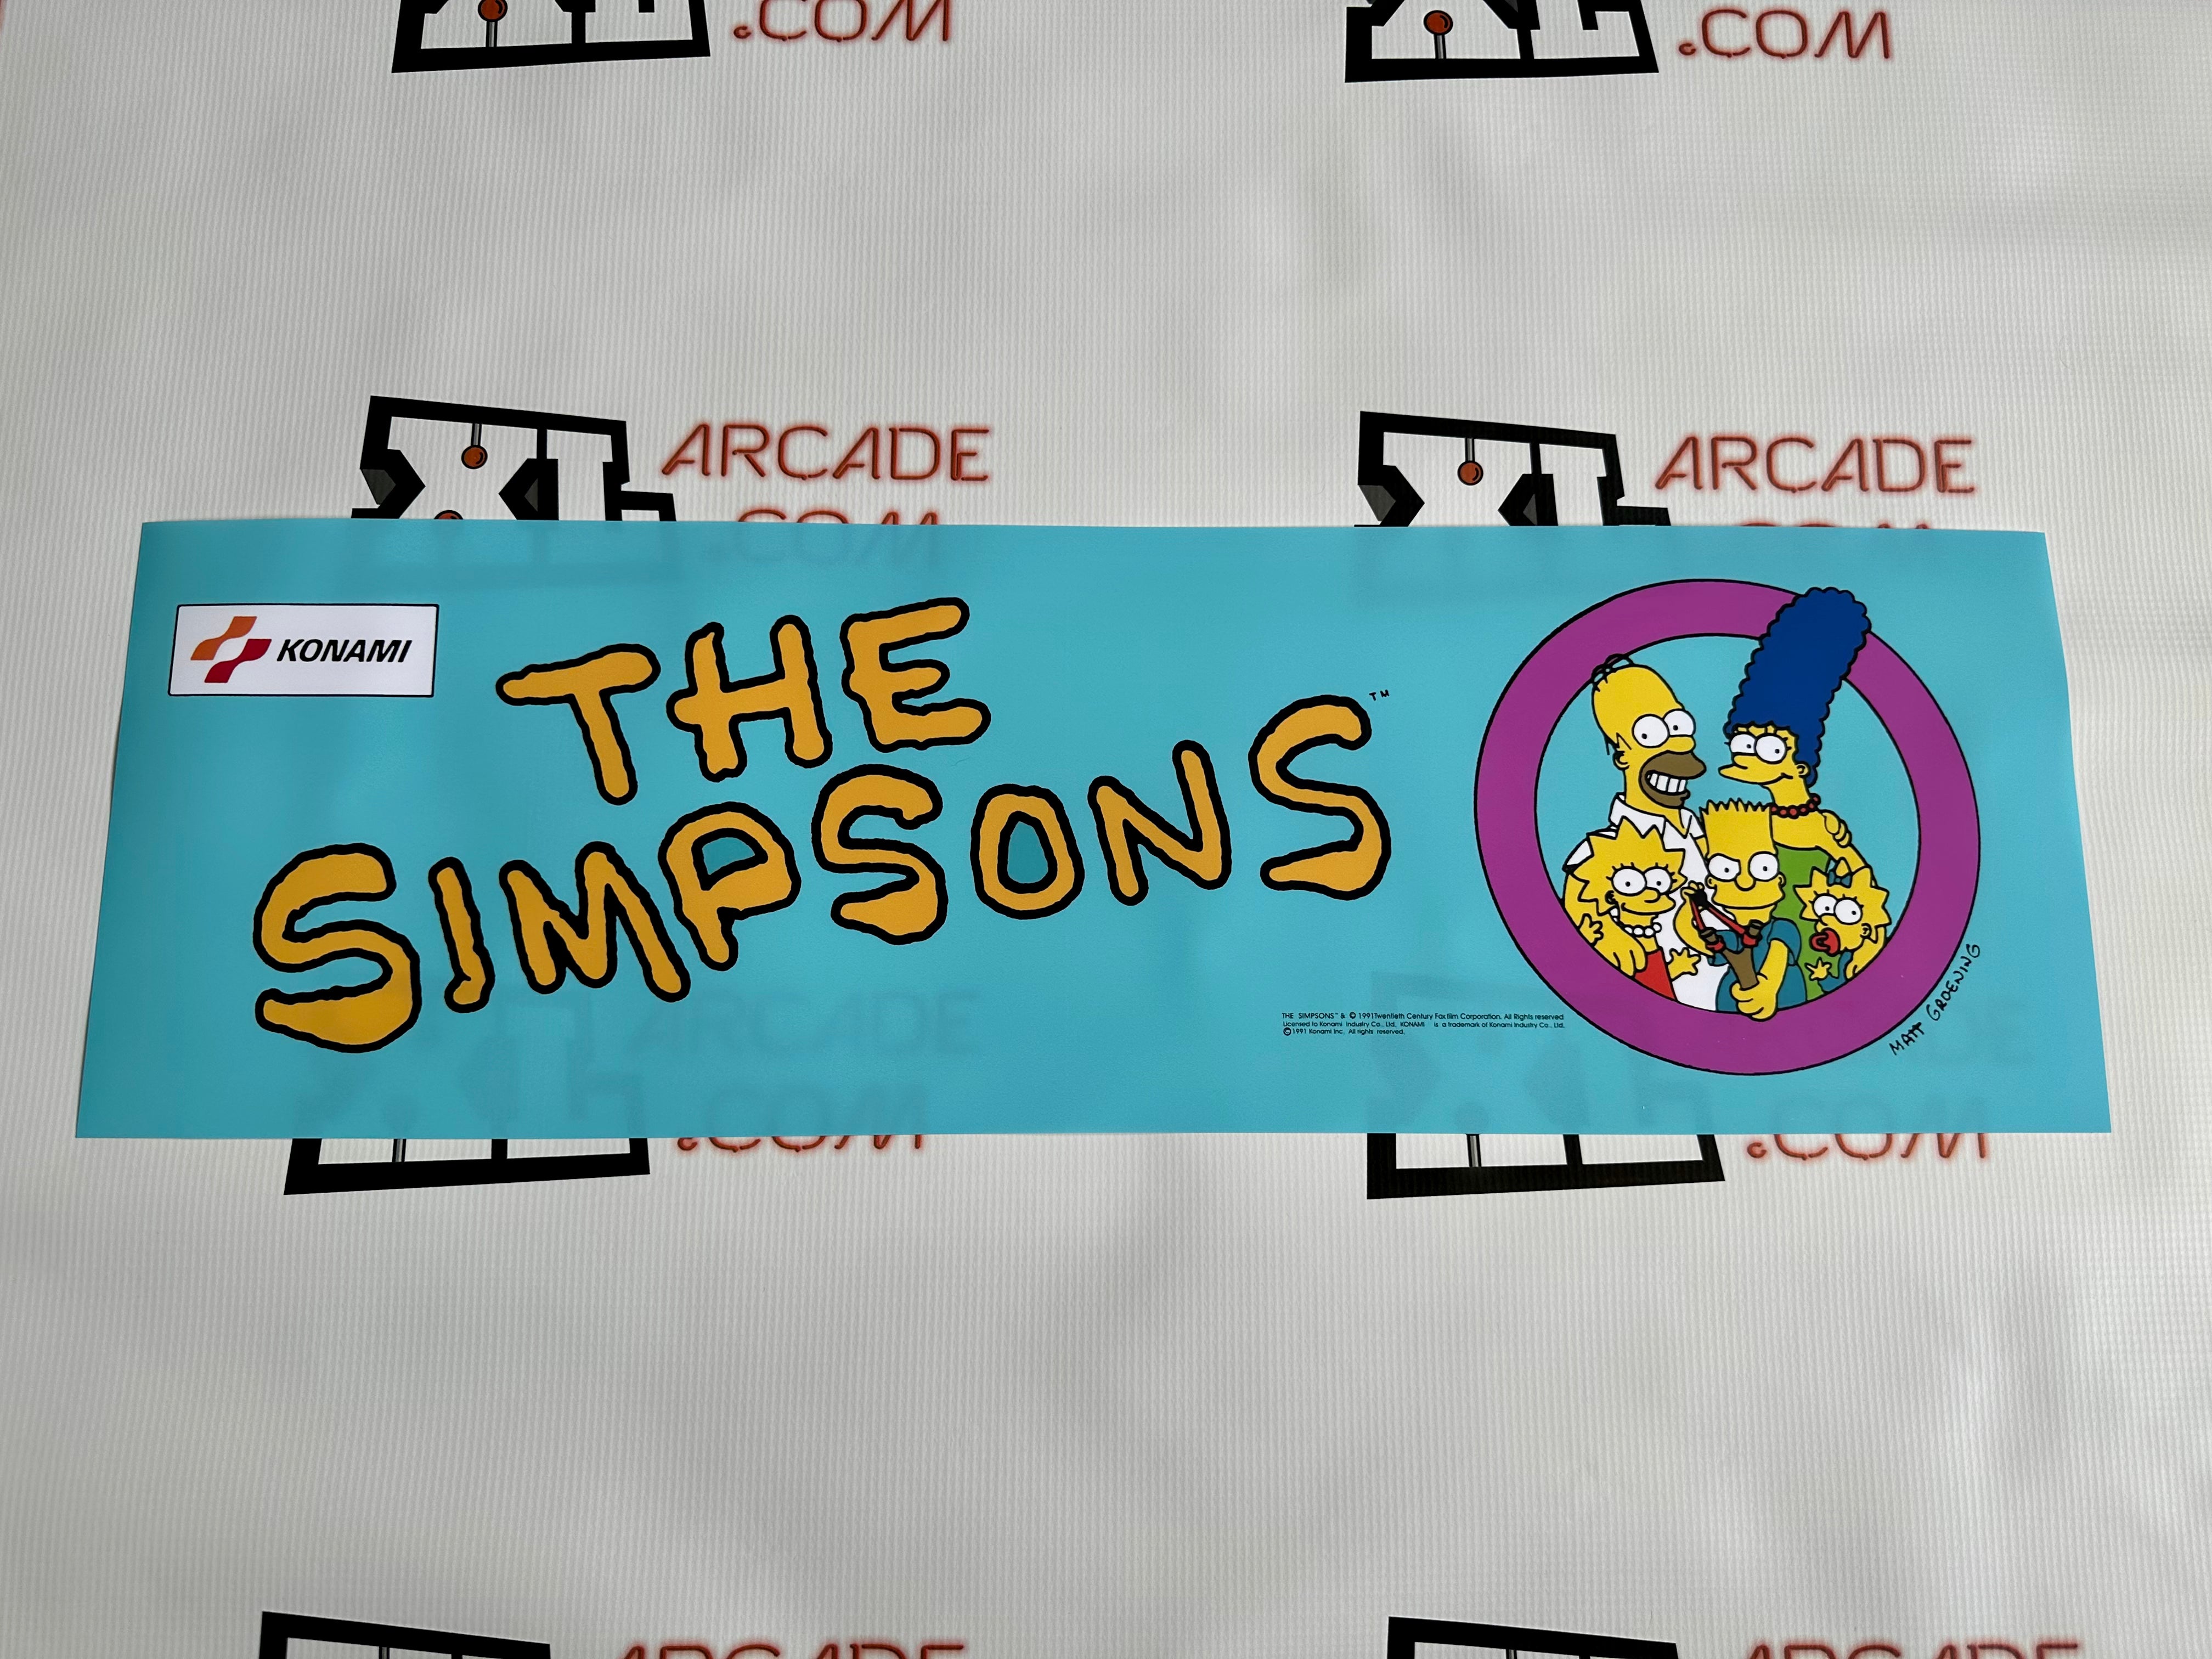 Le chapiteau des Simpsons